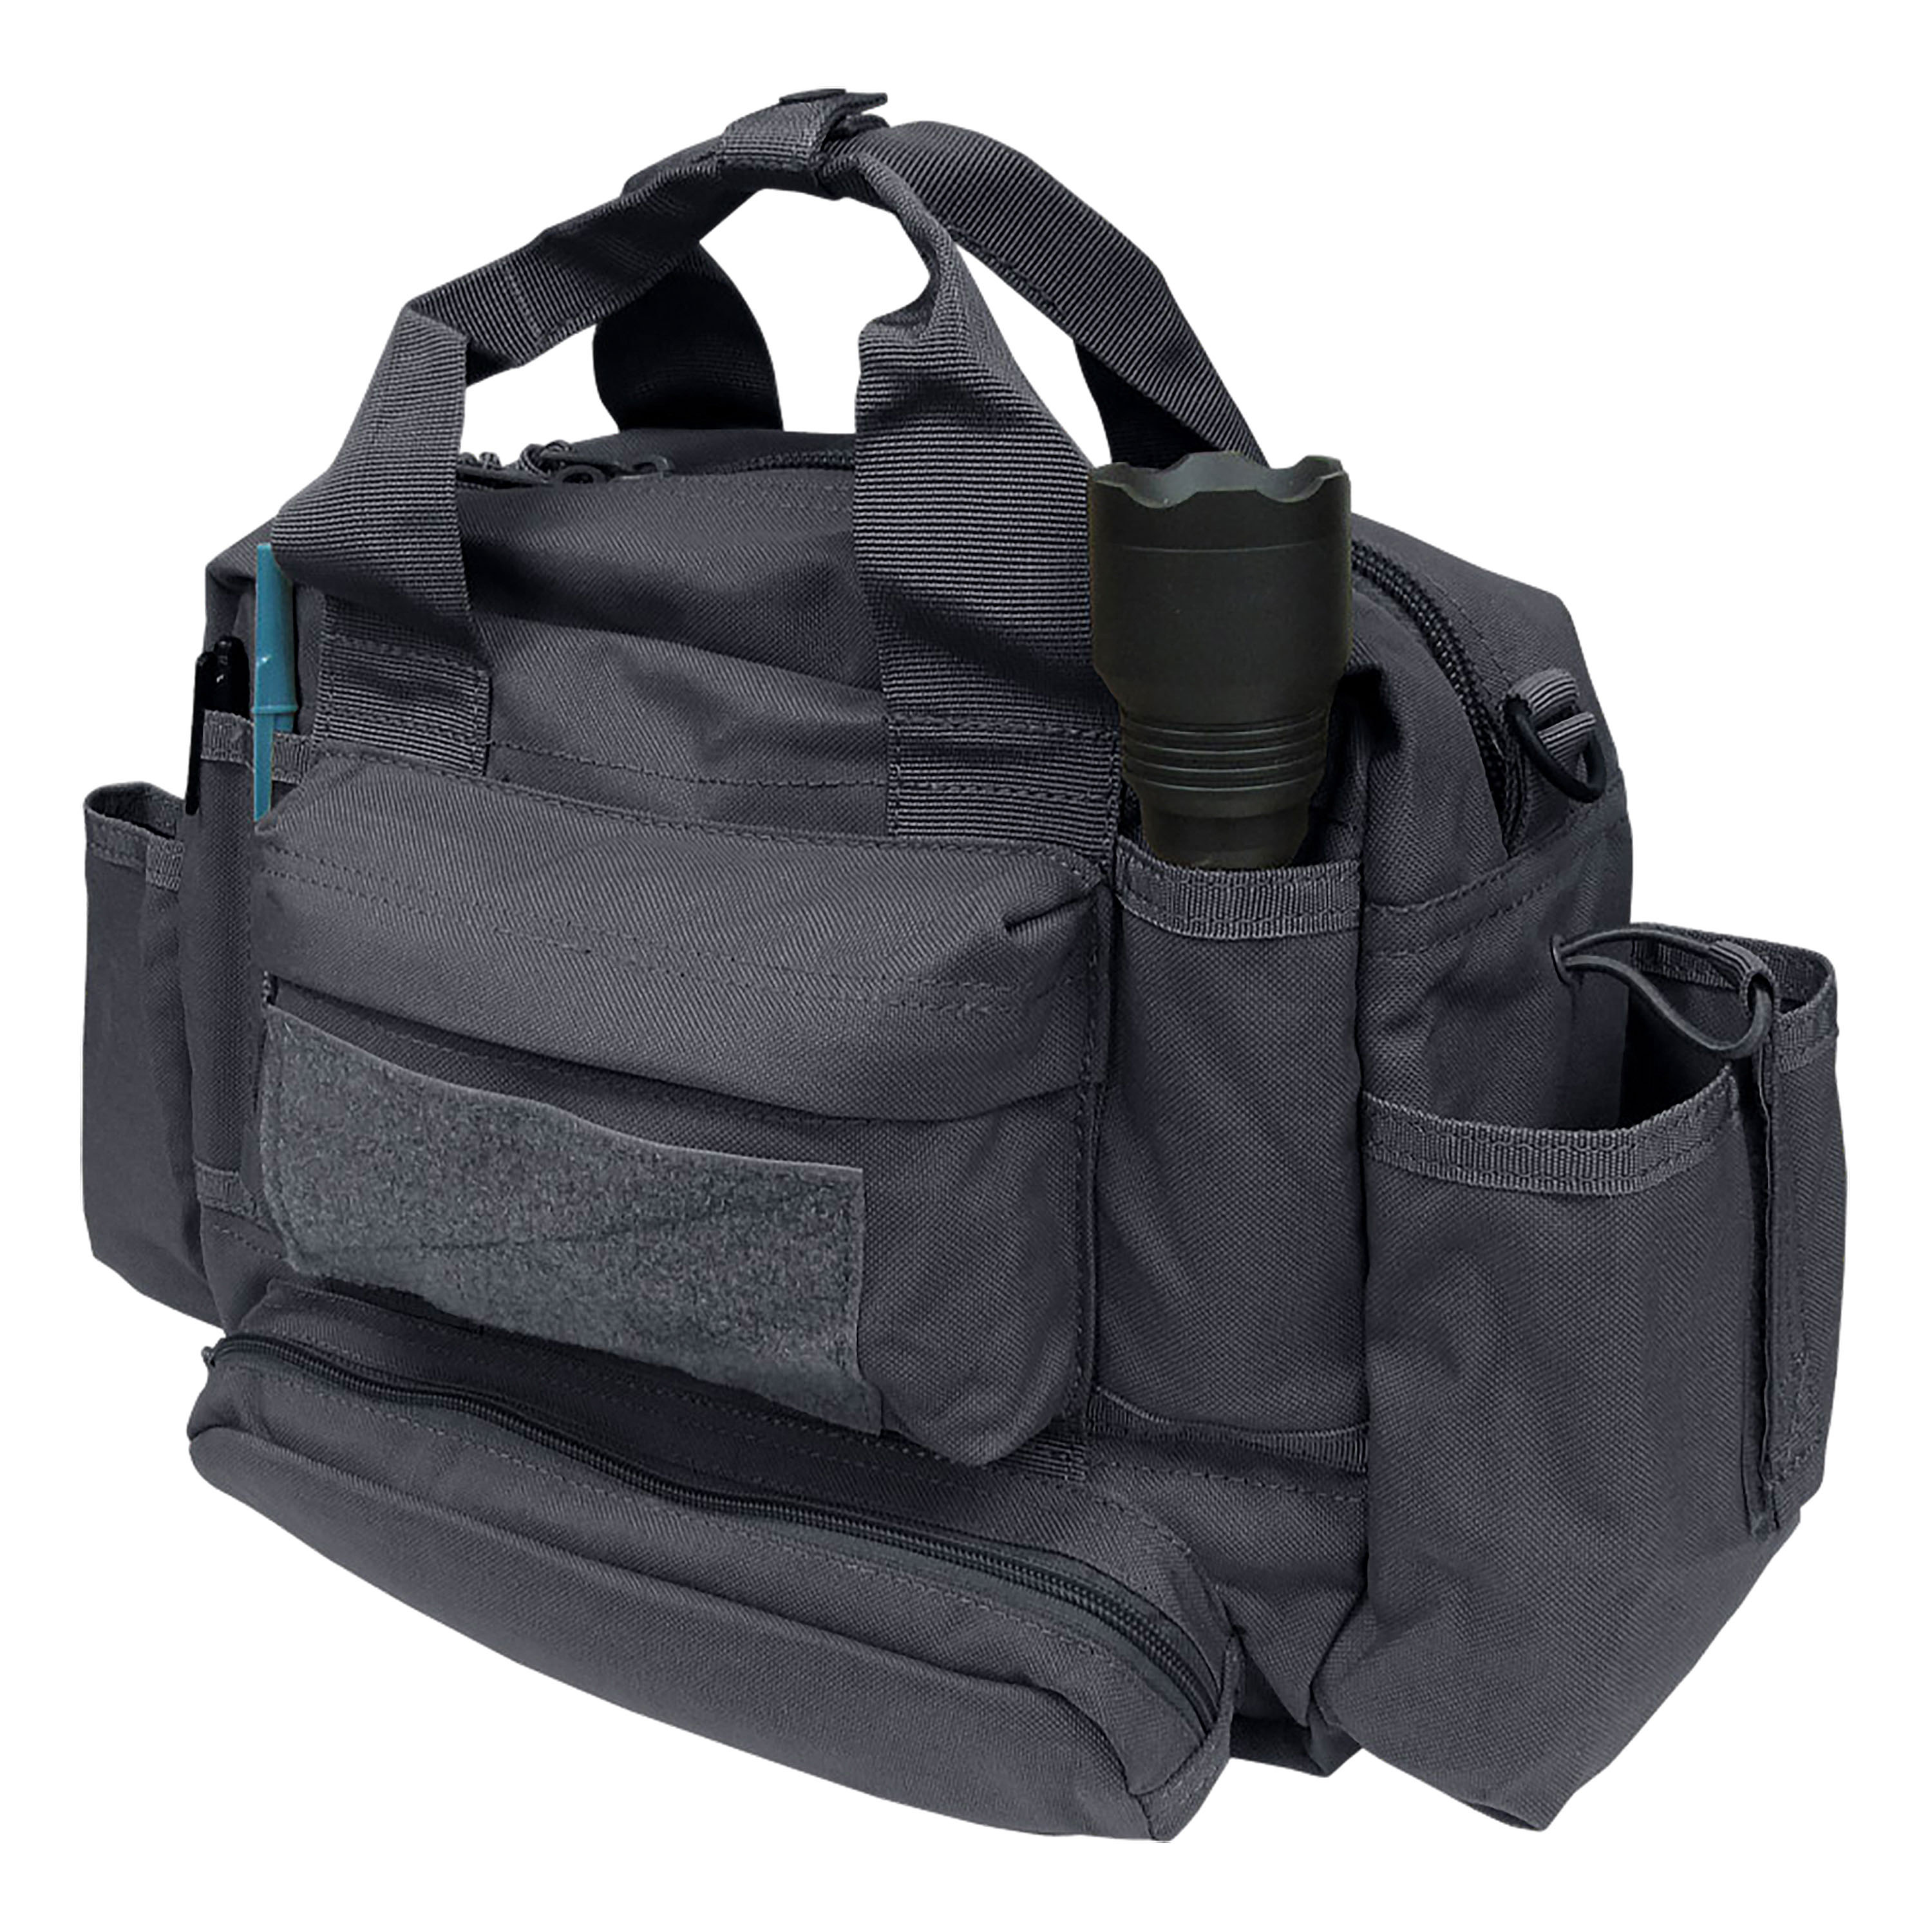 Condor Tactical Response Bag black | Condor Tactical Response Bag black | Shoulder Bags | Bags ...